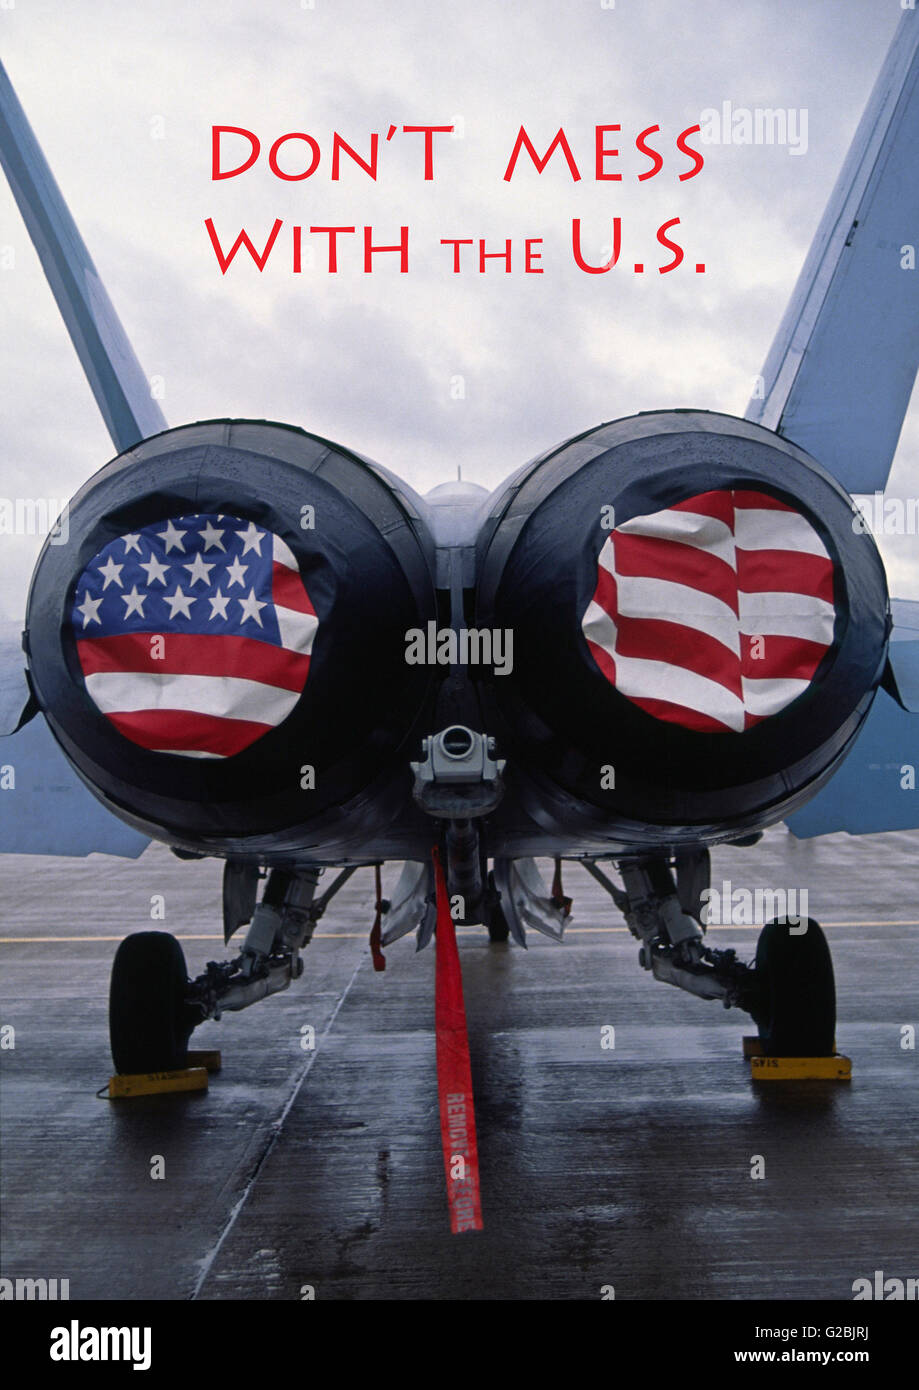 Poster - McDonnell Douglas F/A-18 Hornet twin-motore tutti supersonici-meteo carrier-capace multirole jet di combattimento aereo aereo Foto Stock